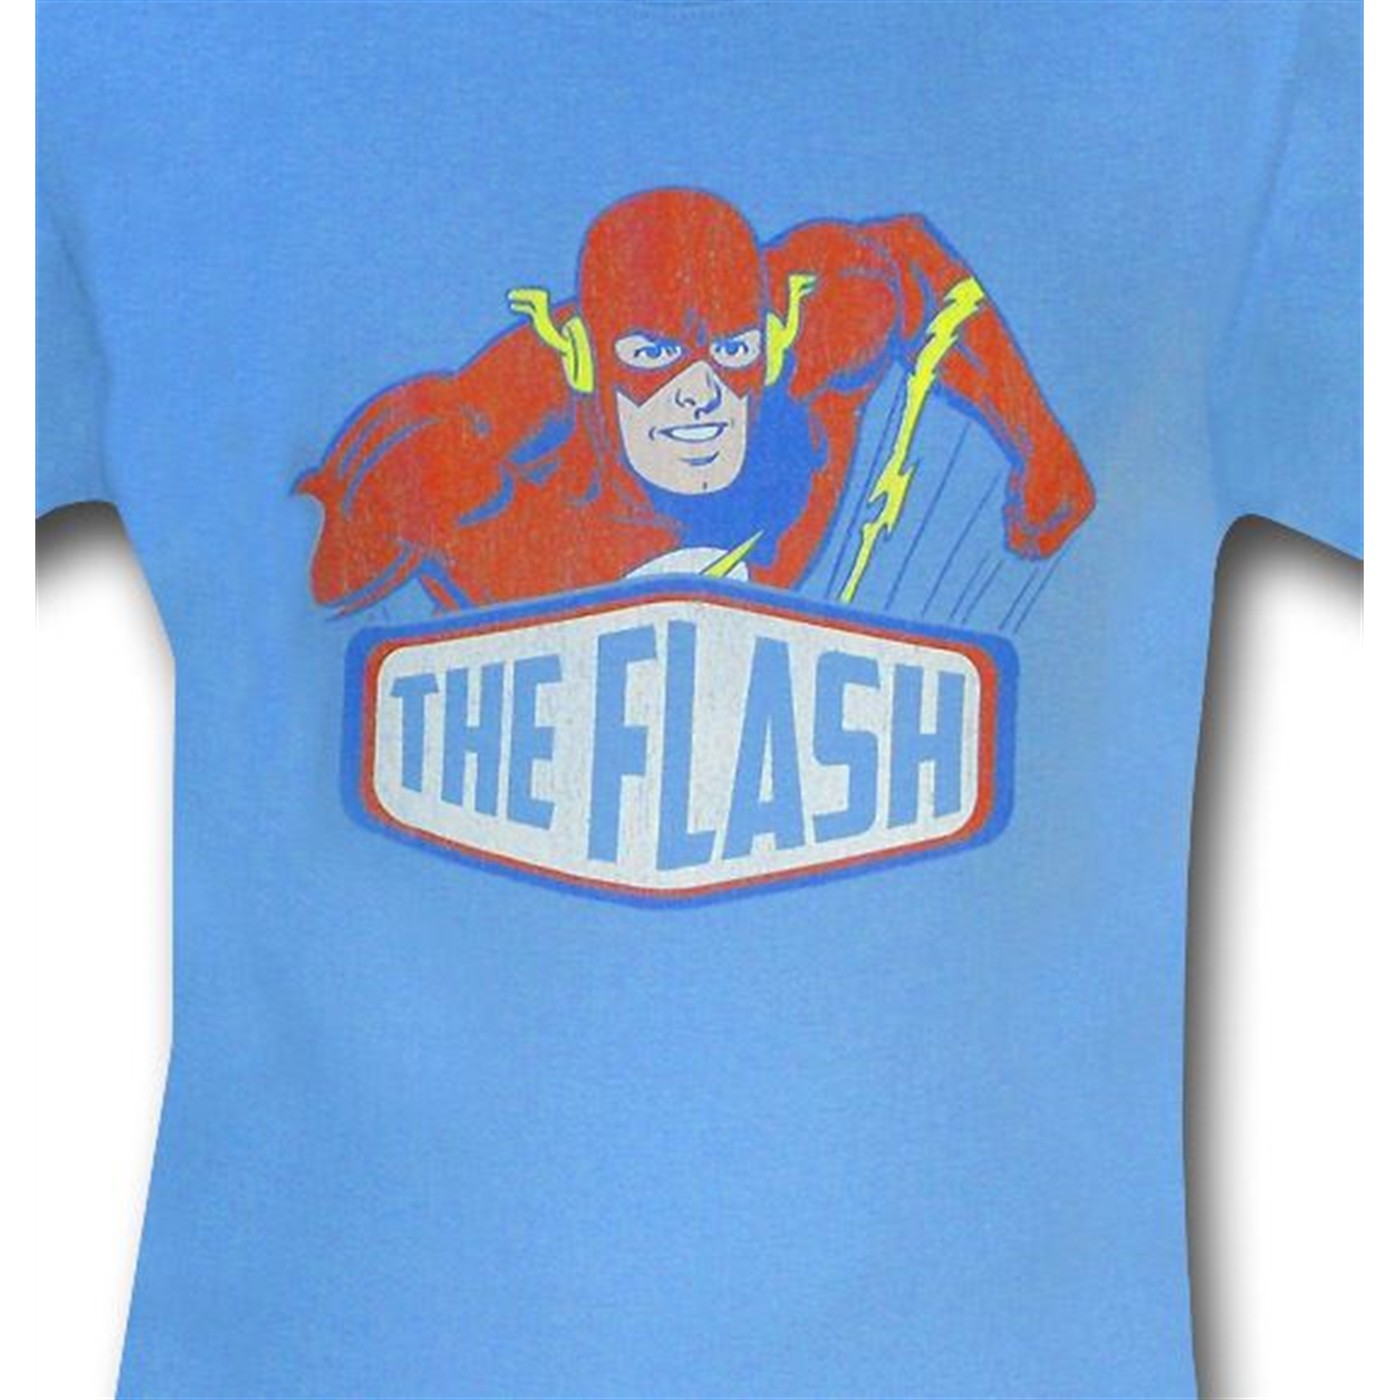 Flash Sign Light Blue T-Shirt